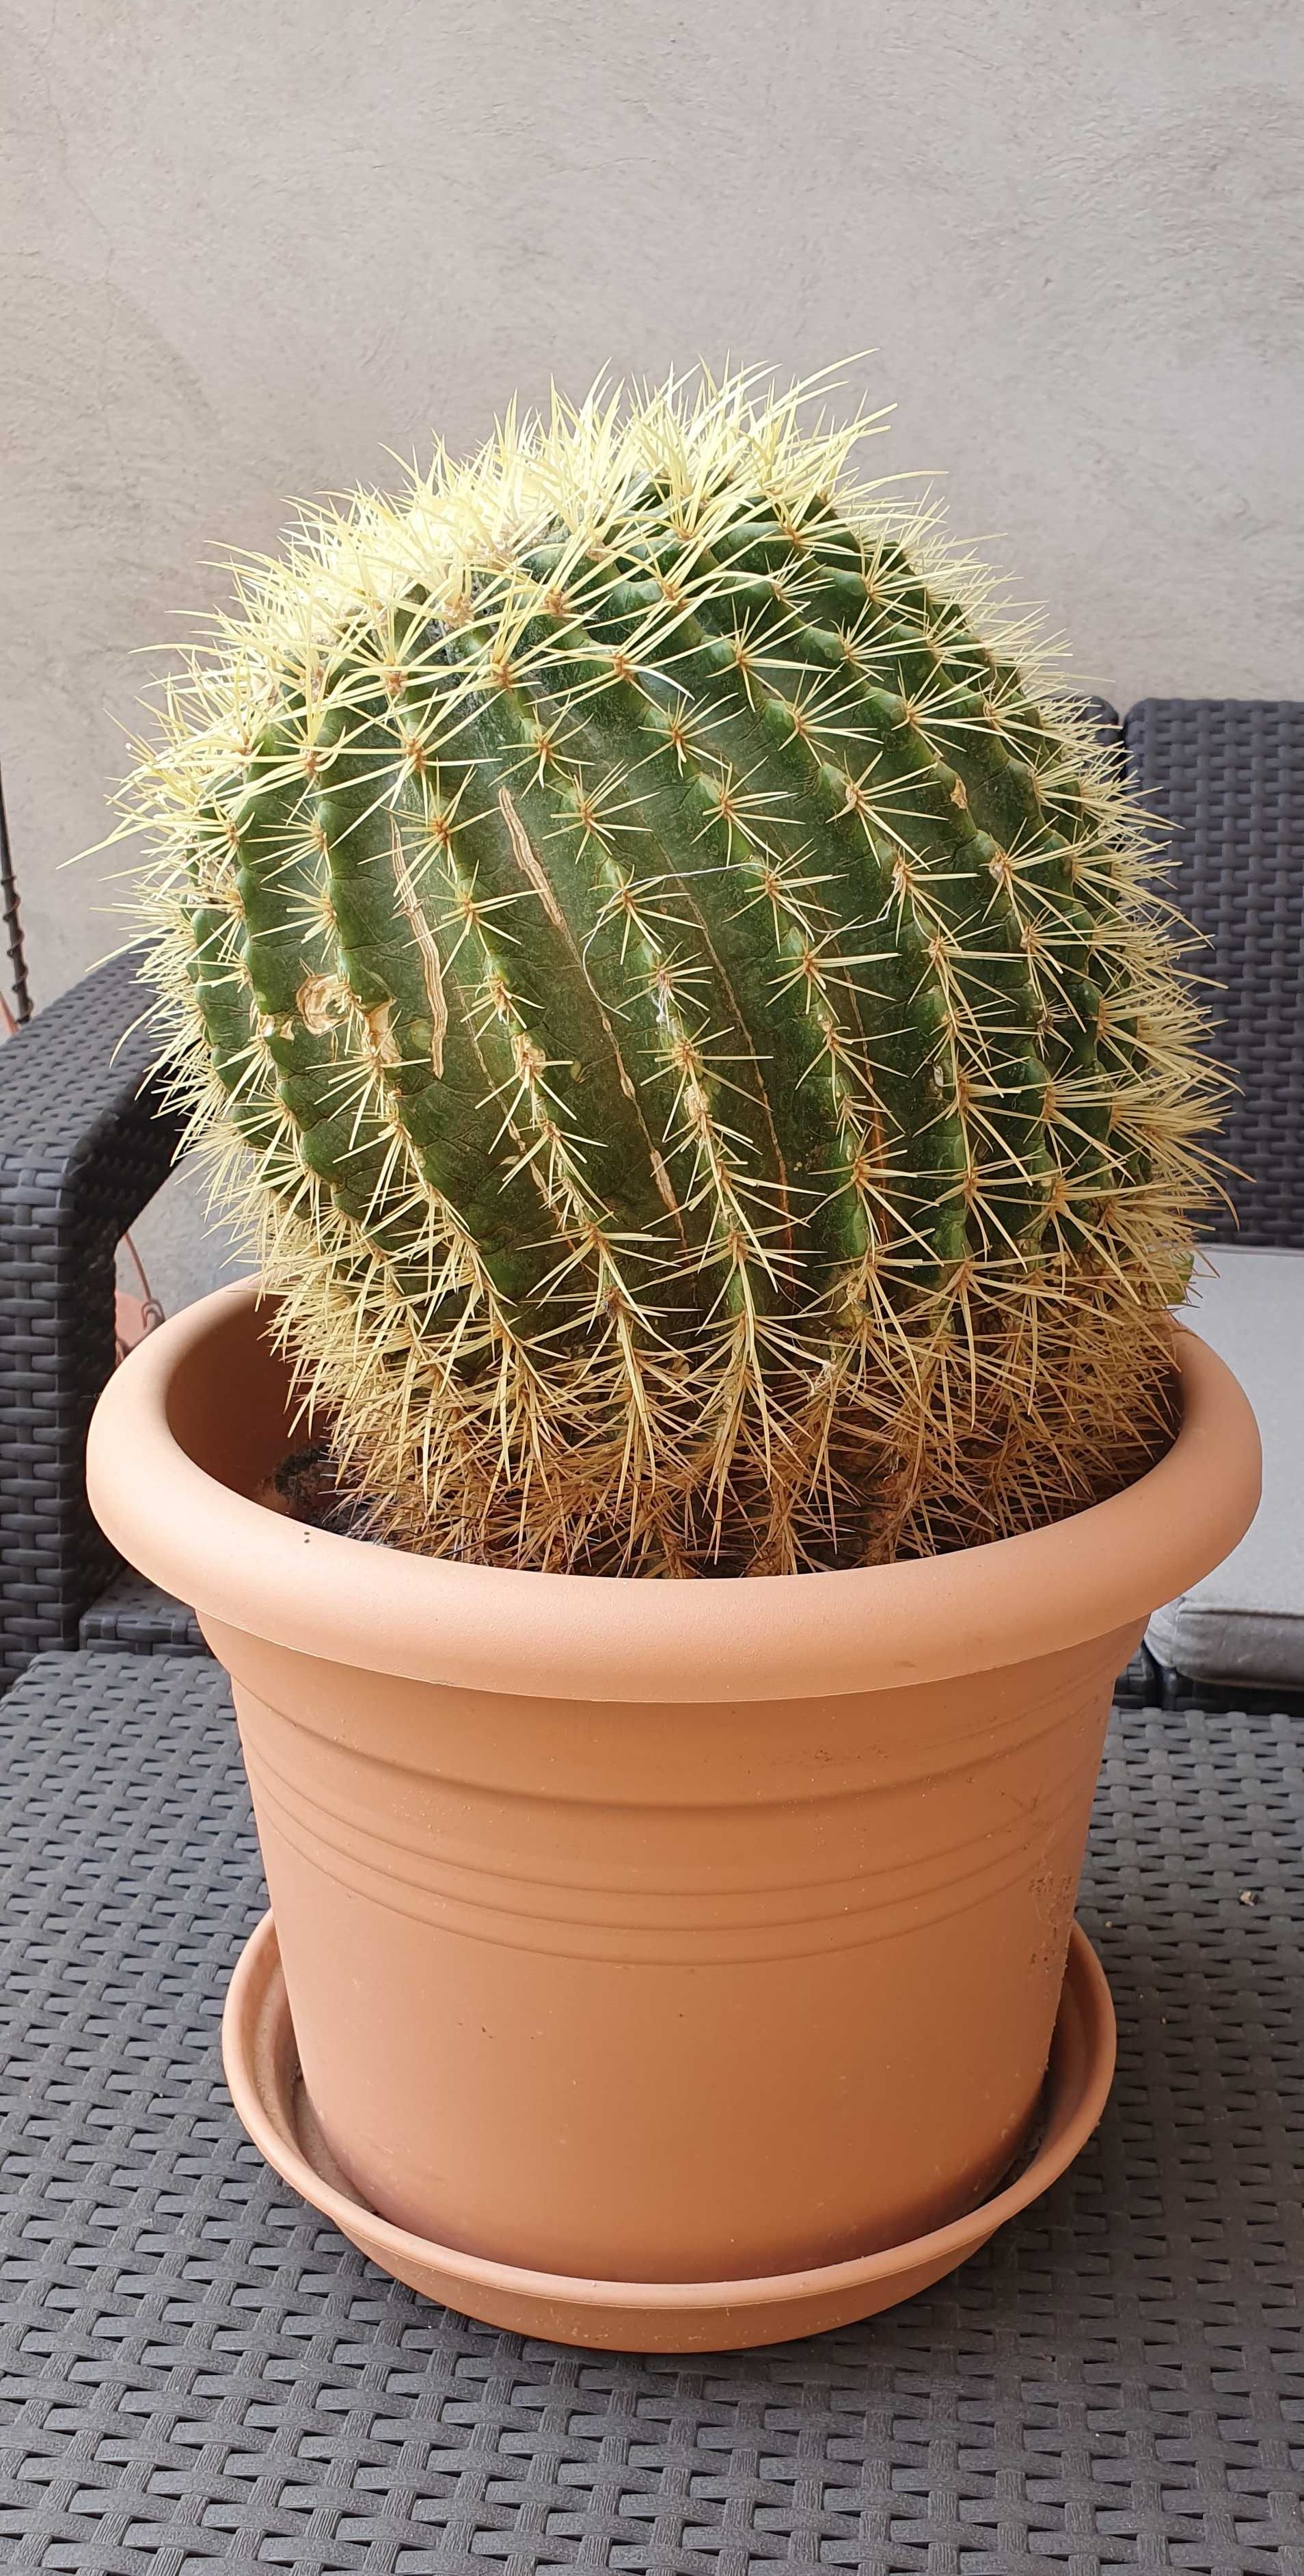 Vand planta cactus 30 cm inaltime, 90 cm circumferinta, cu ghiveci